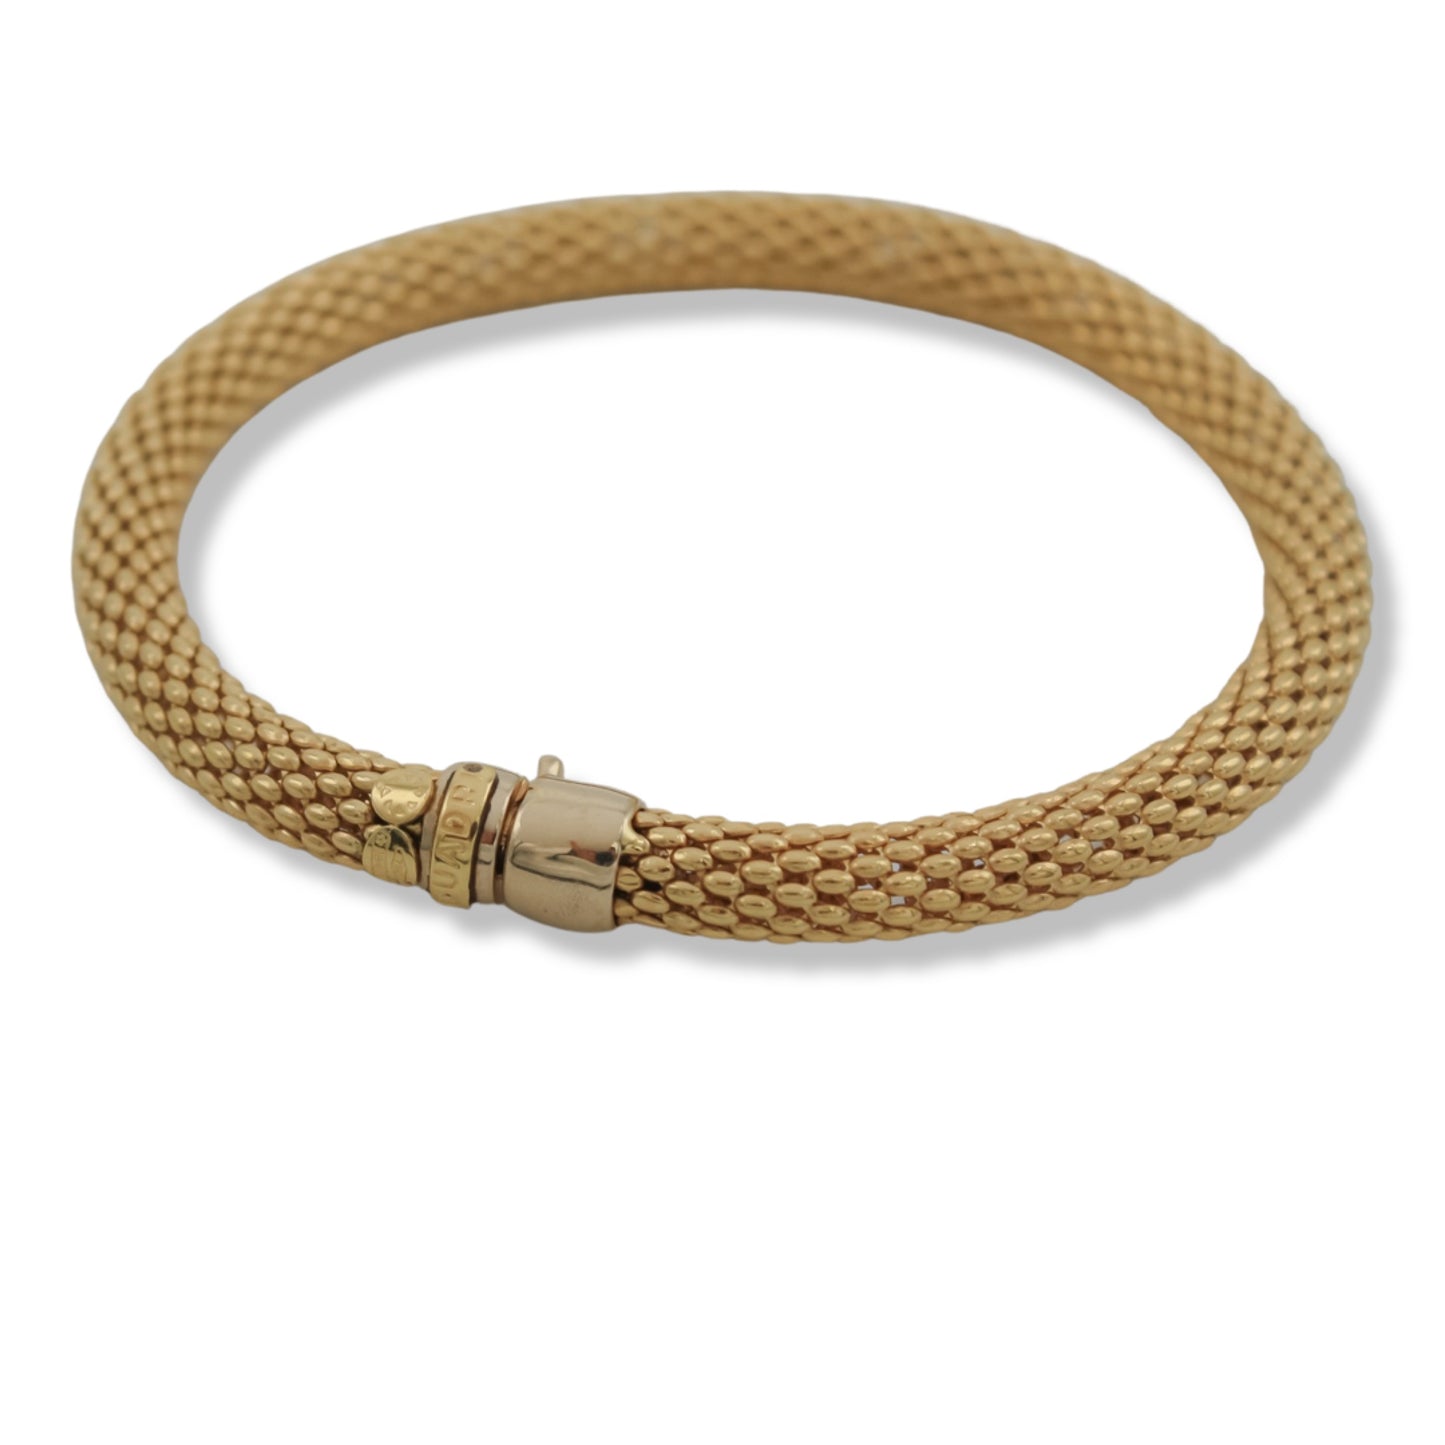 Women’s Fancy Popcorn Mesh Style Necklace & Bracelet Set In 18K Gold